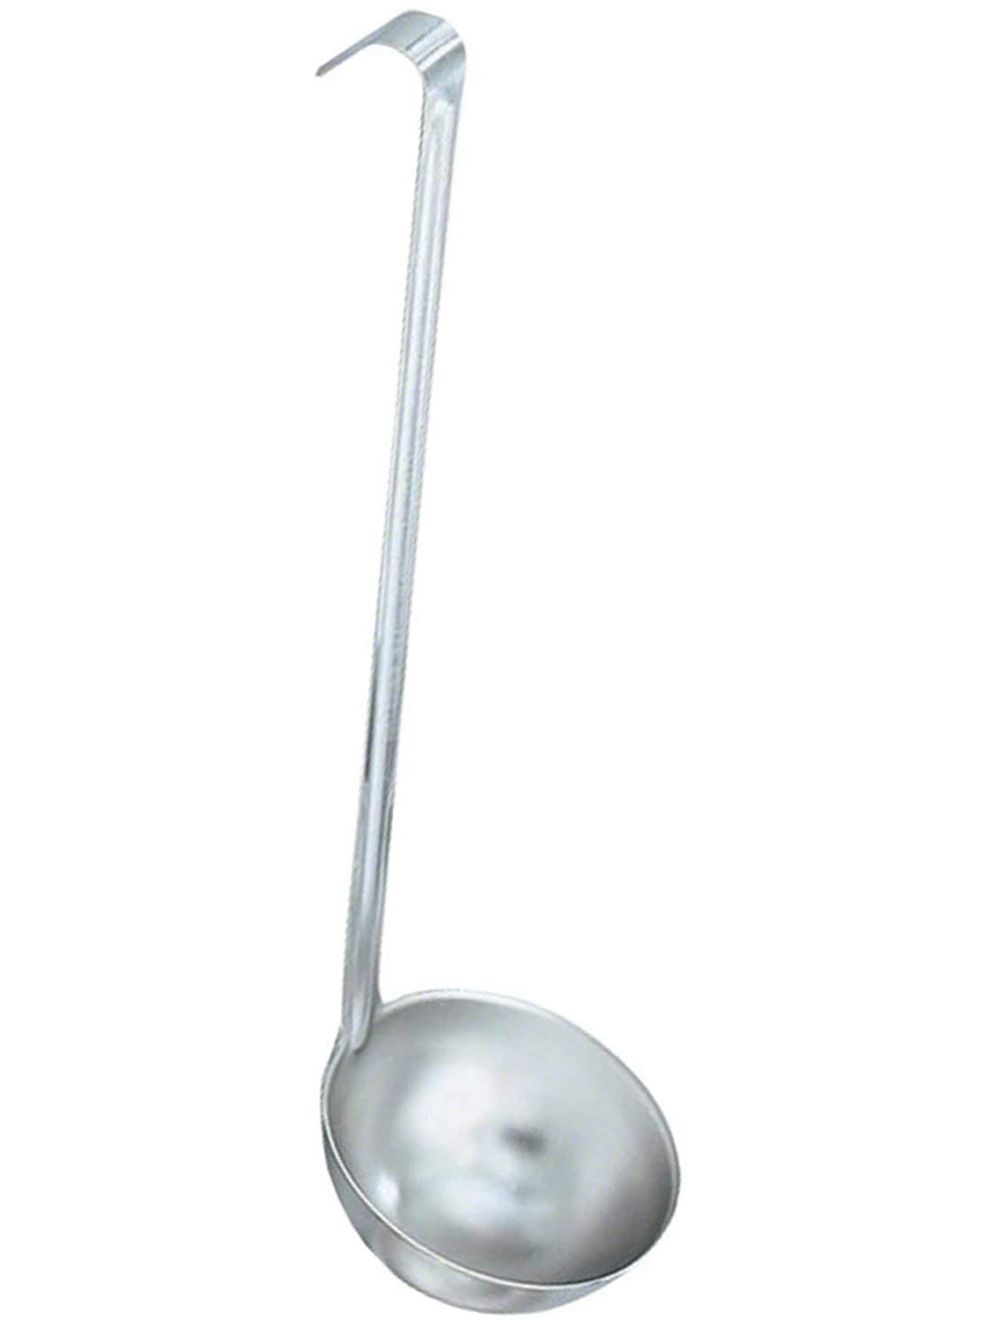 Raj Professional Ladle Spoon, Silver, 200 ml, RPL003